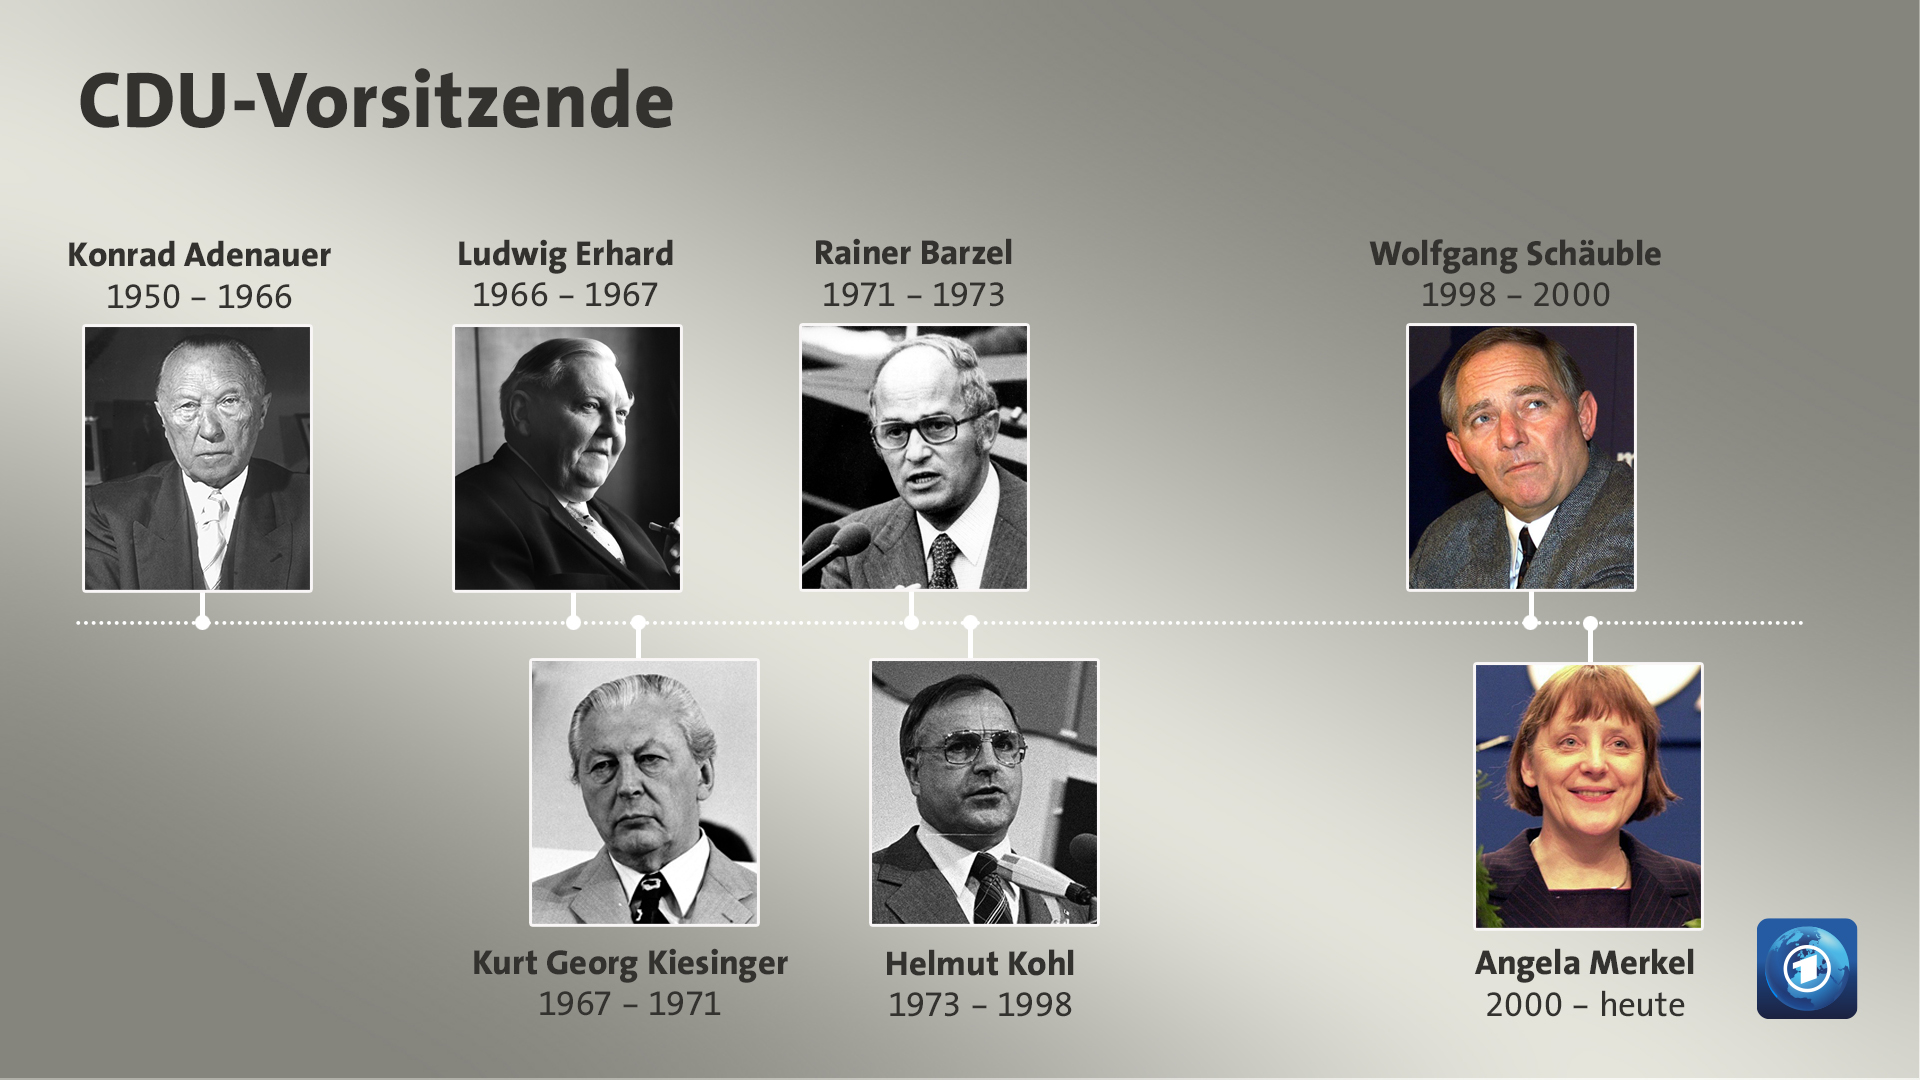 CDU-Vorsitzende von 1950 bis heute | Bildquelle: dpa, picture alliance / nordphoto